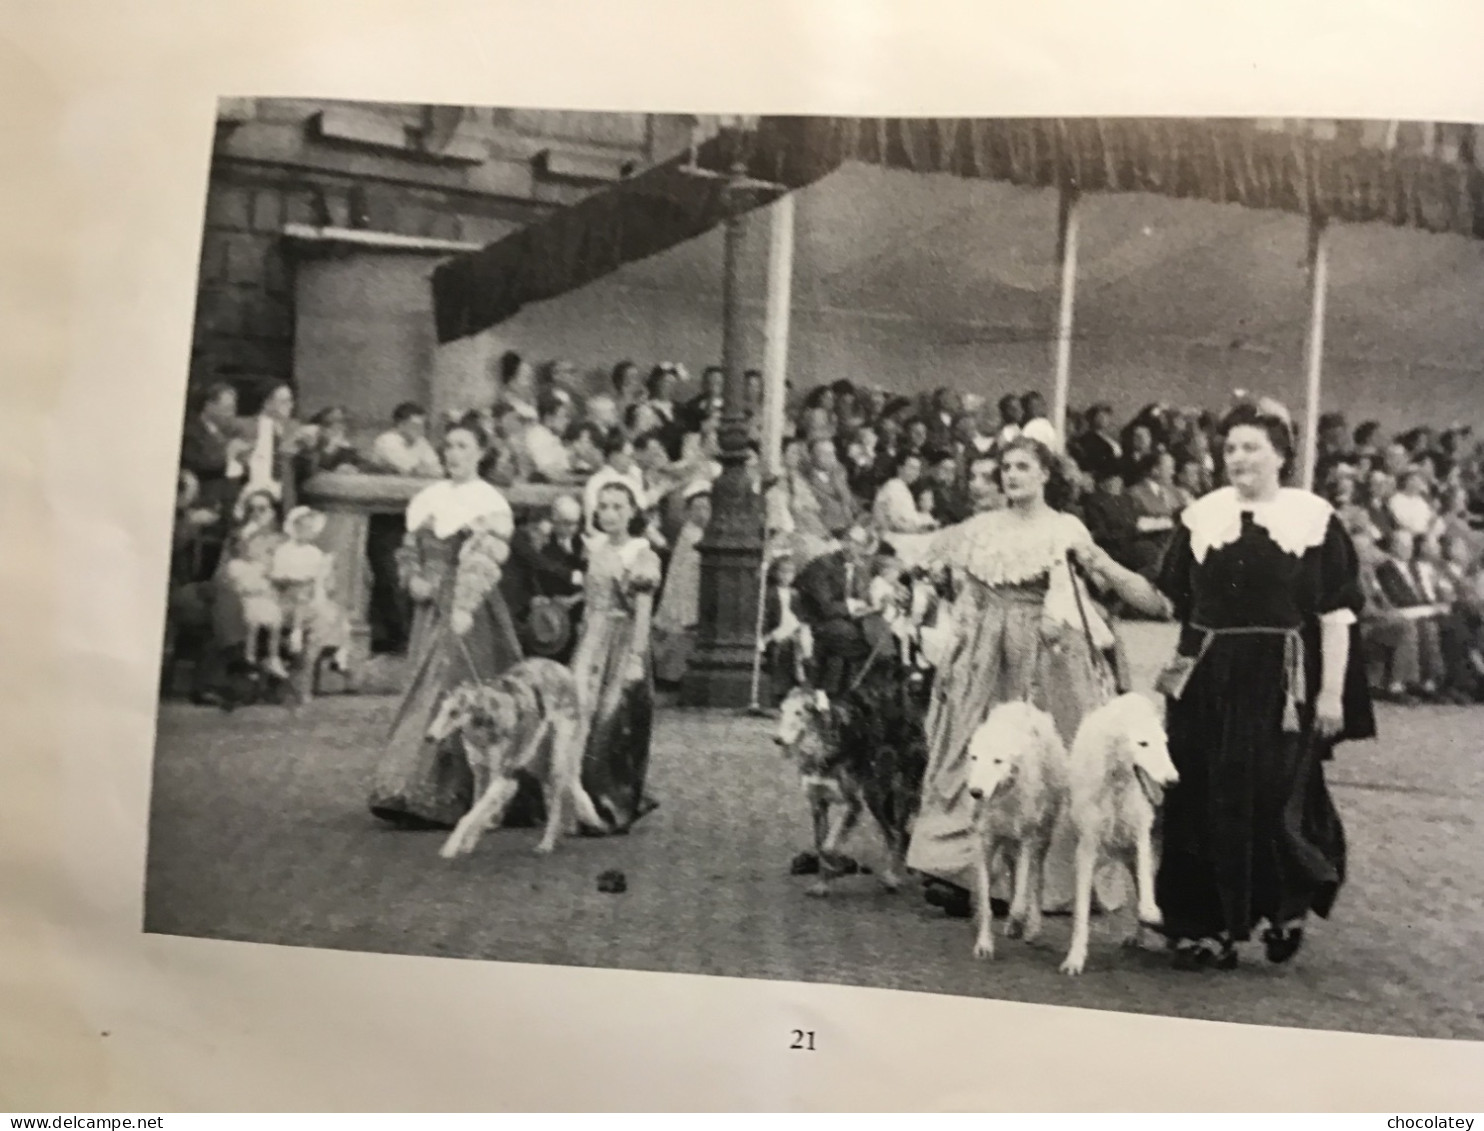 Antwerpen van dijck feesten boekje 1949